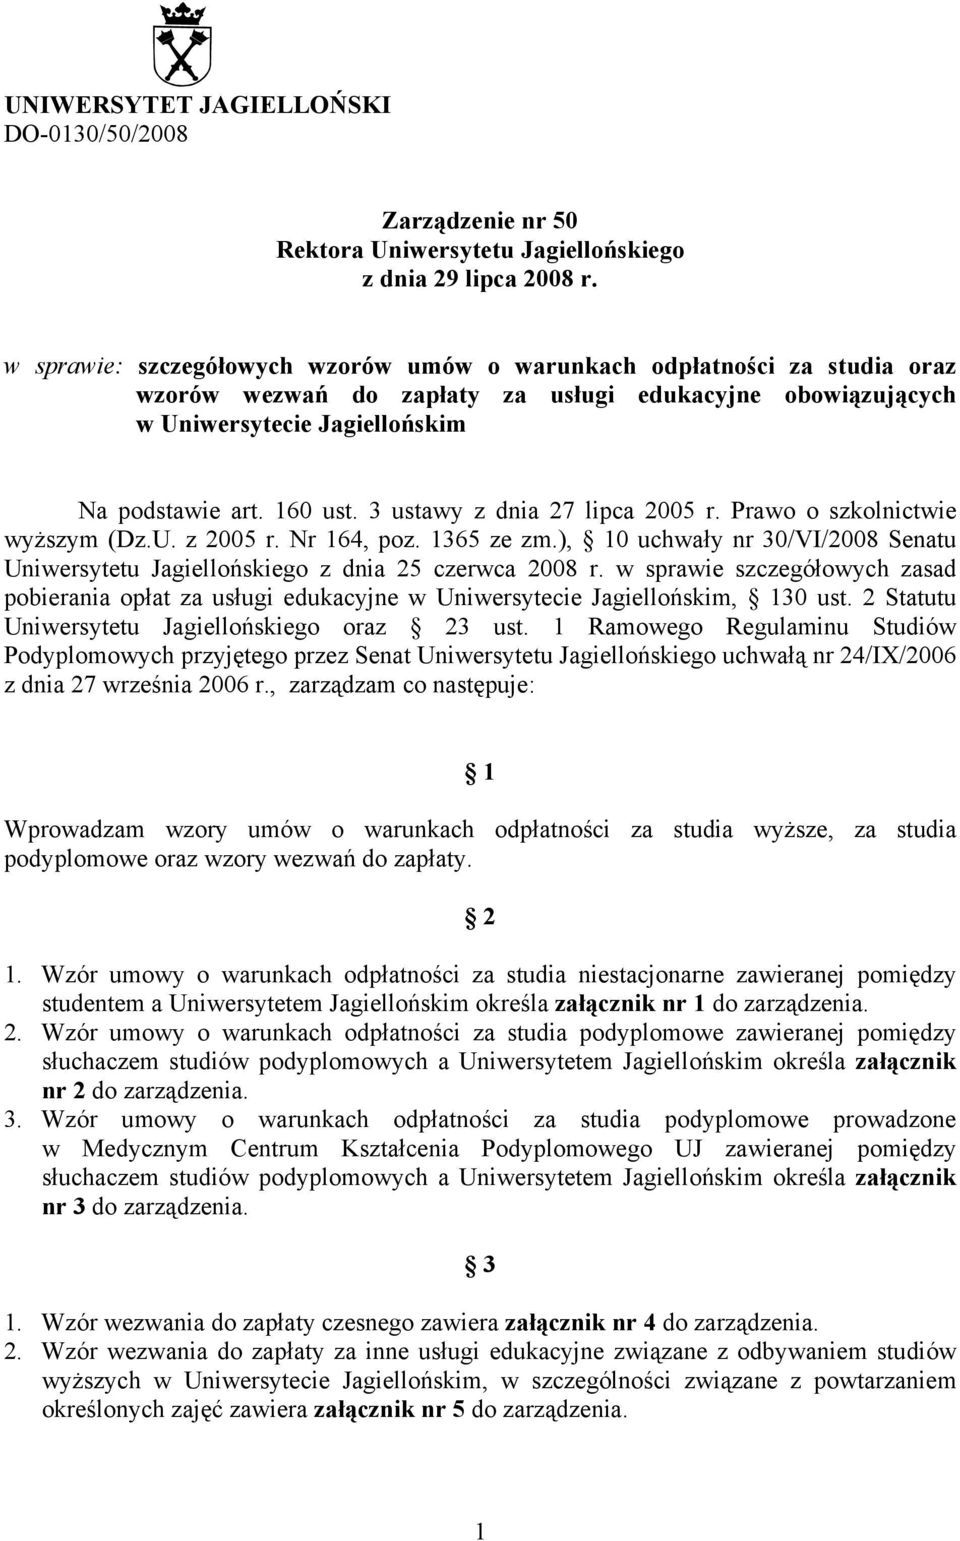 3 ustawy z dnia 27 lipca 2005 r. Prawo o szkolnictwie wyższym (Dz.U. z 2005 r. Nr 164, poz. 1365 ze zm.), 10 uchwały nr 30/VI/2008 Senatu Uniwersytetu Jagiellońskiego z dnia 25 czerwca 2008 r.